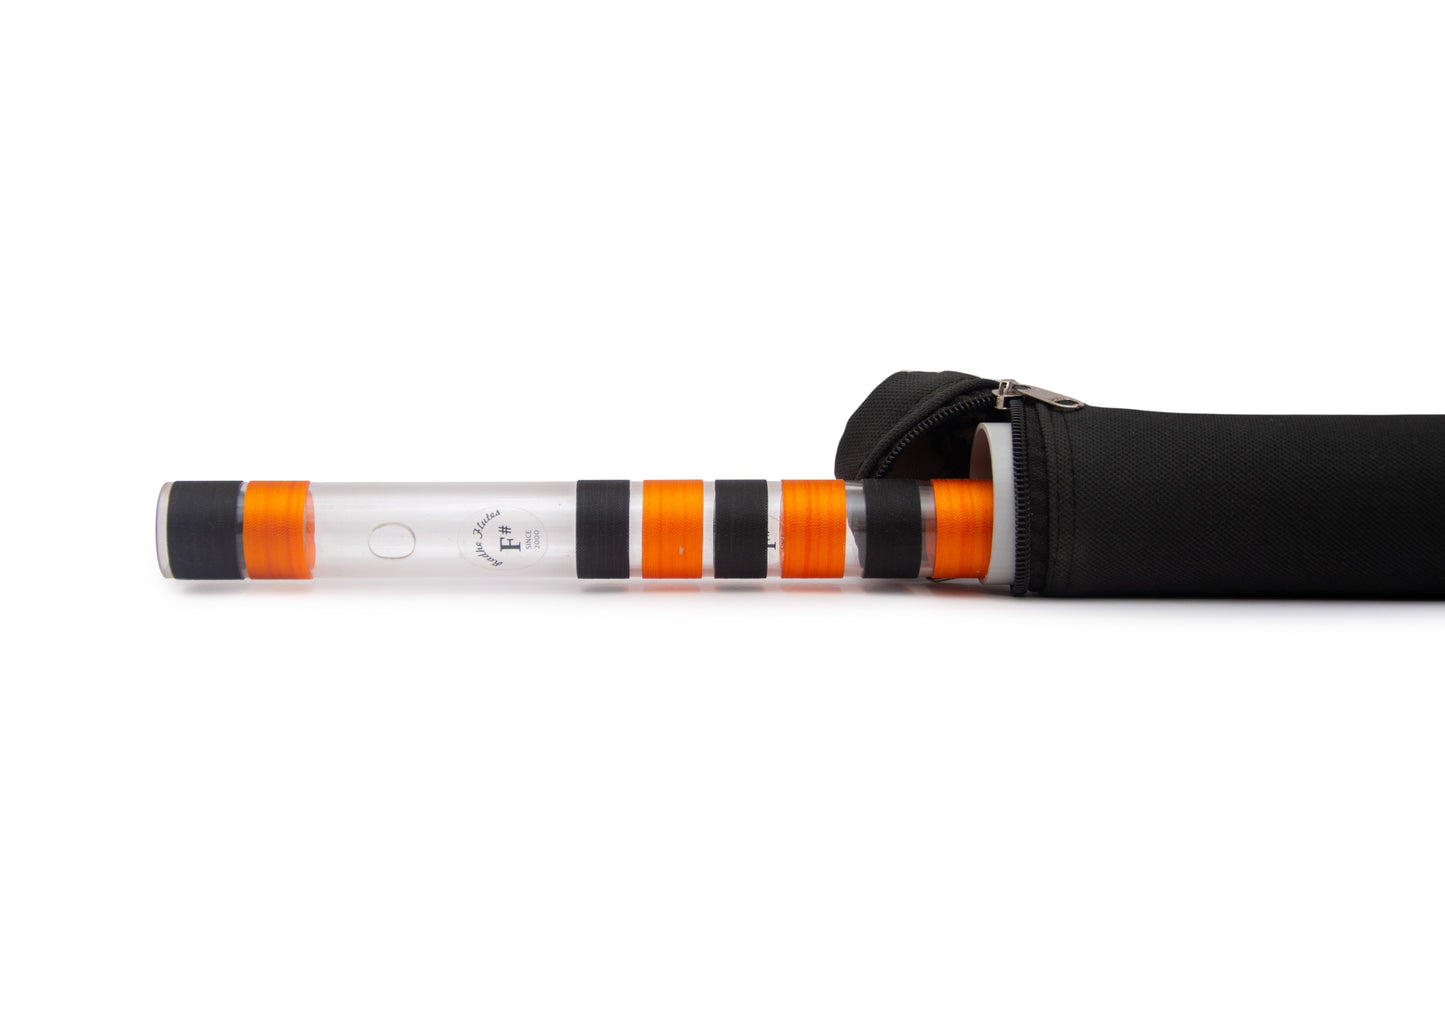 Radhe Flutes Acrylic Fiber F Sharp Bansuri Base Octave with Hard Cover 27"inches